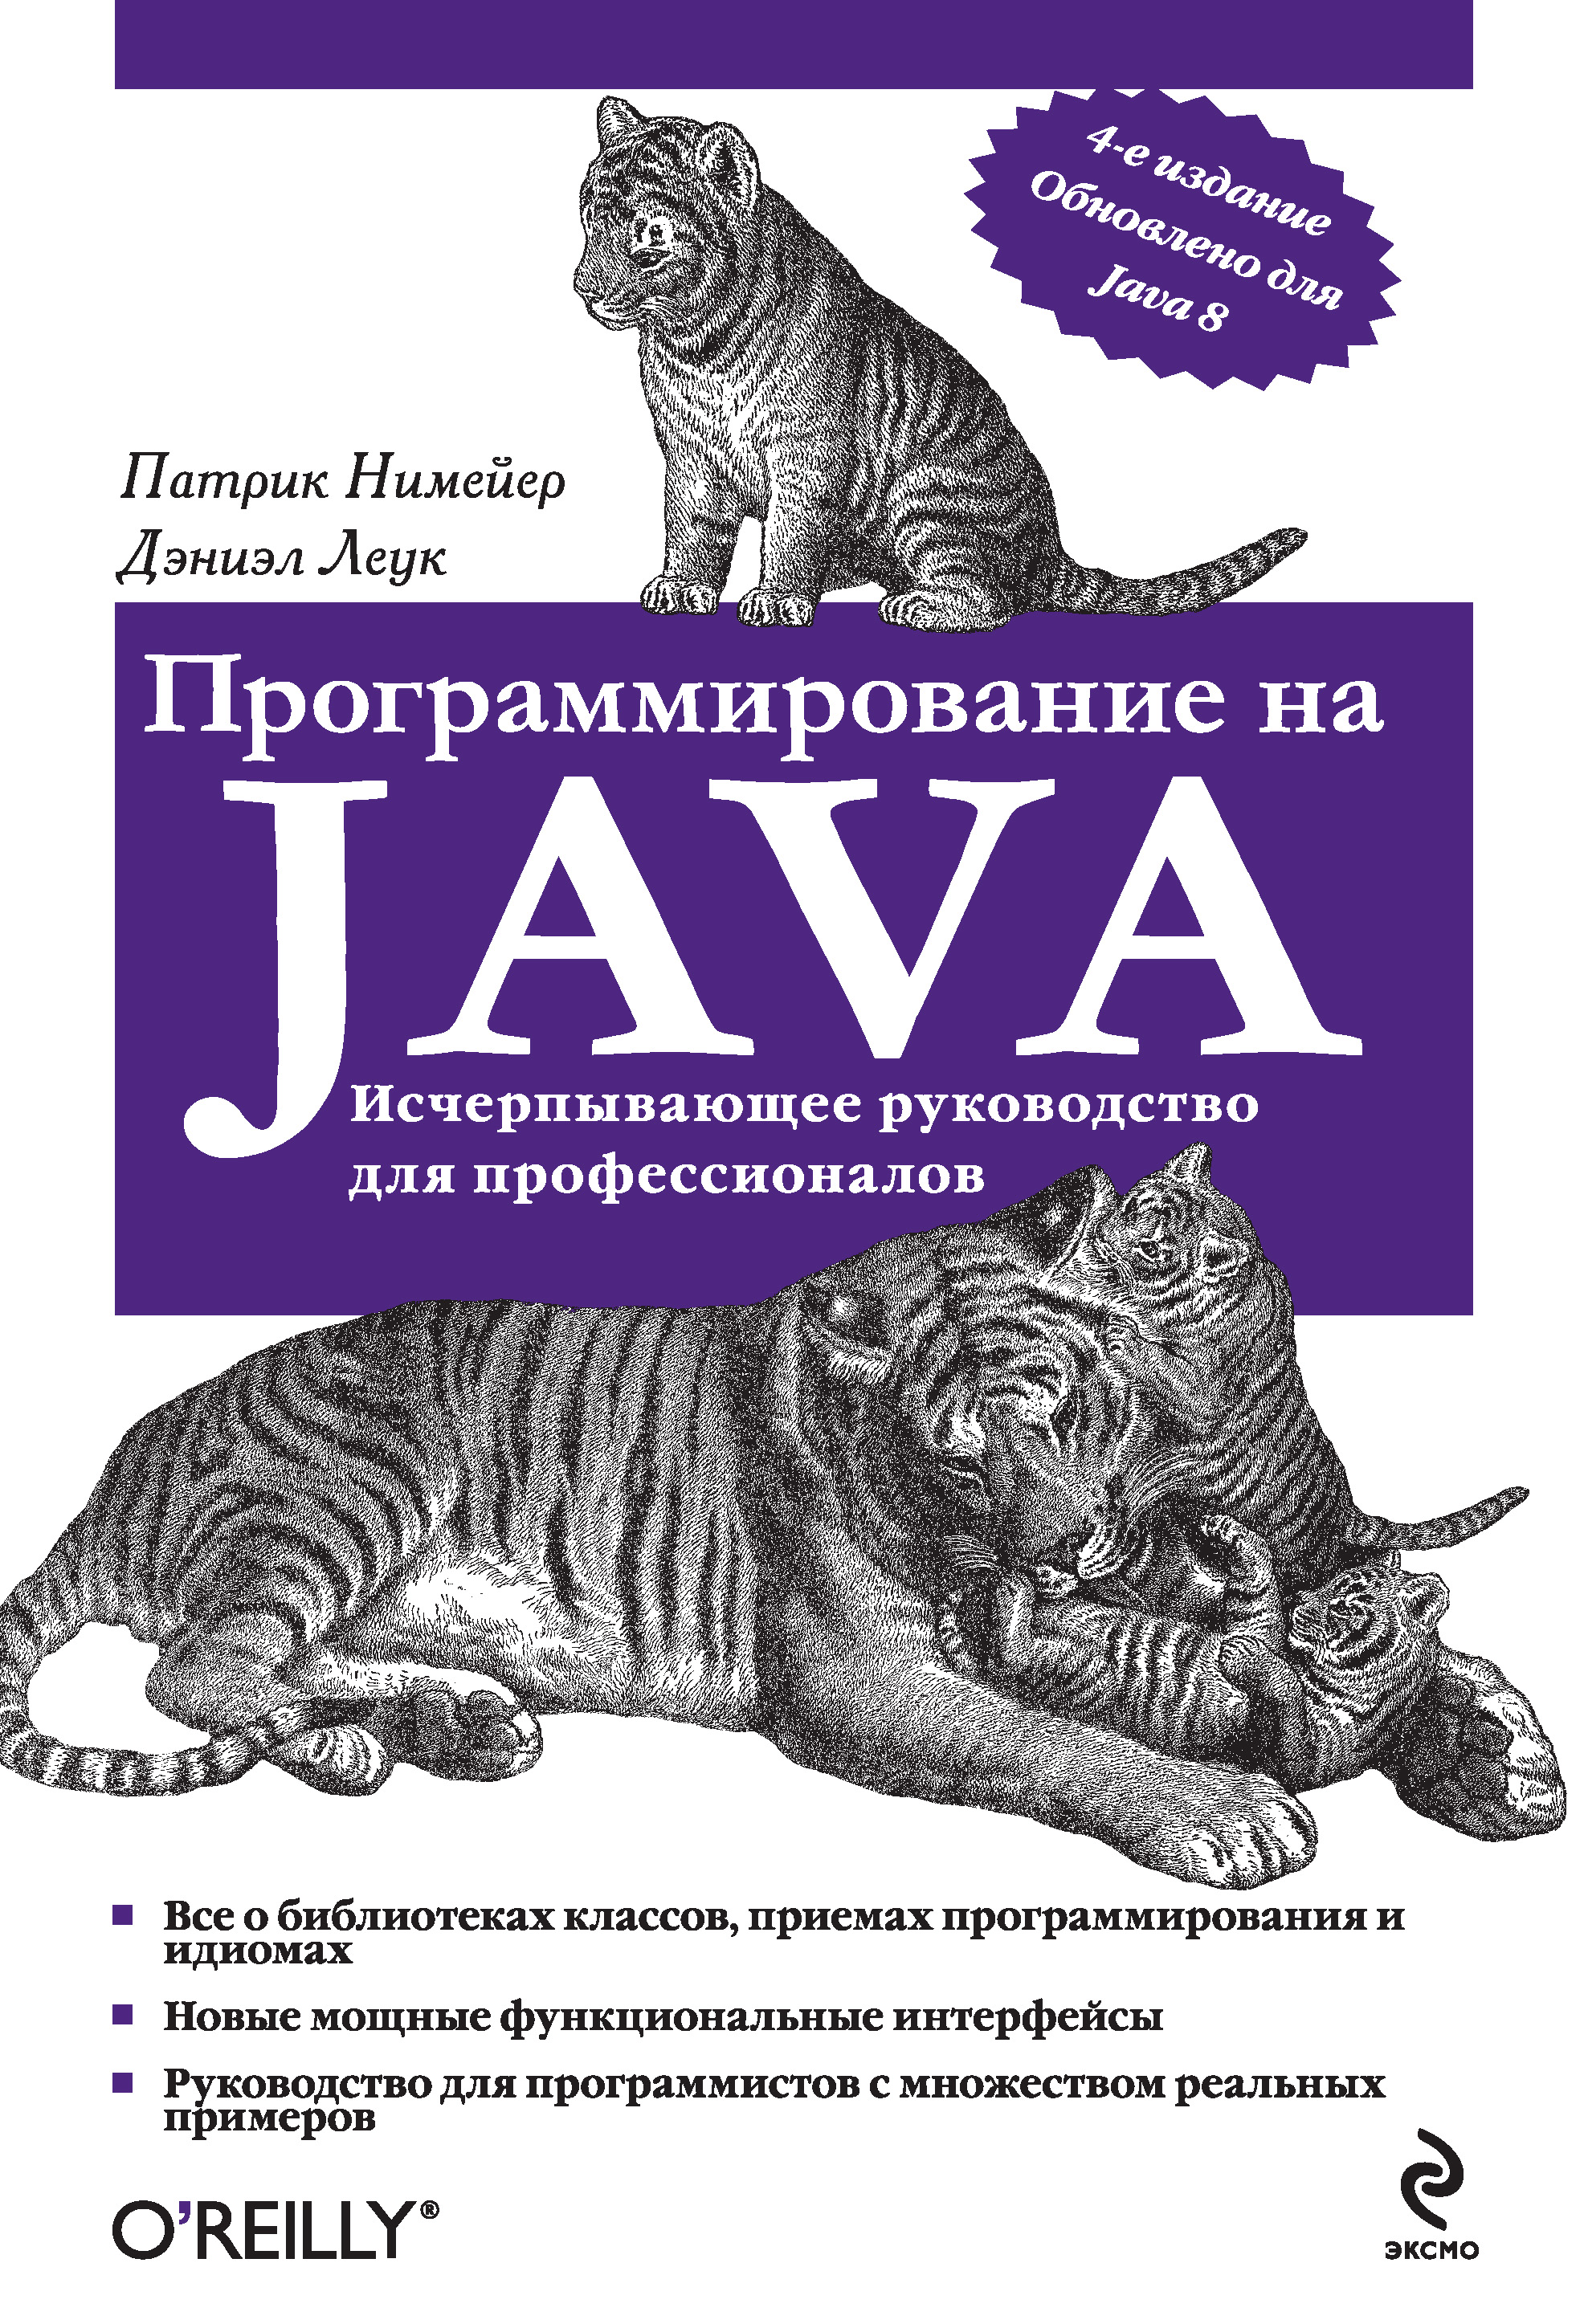 Книга Мировой компьютерный бестселлер Программирование на Java созданная Патрик Нимейер, Дэниэл Леук, Михаил Райтман может относится к жанру зарубежная компьютерная литература, программирование. Стоимость электронной книги Программирование на Java с идентификатором 8476071 составляет 689.00 руб.